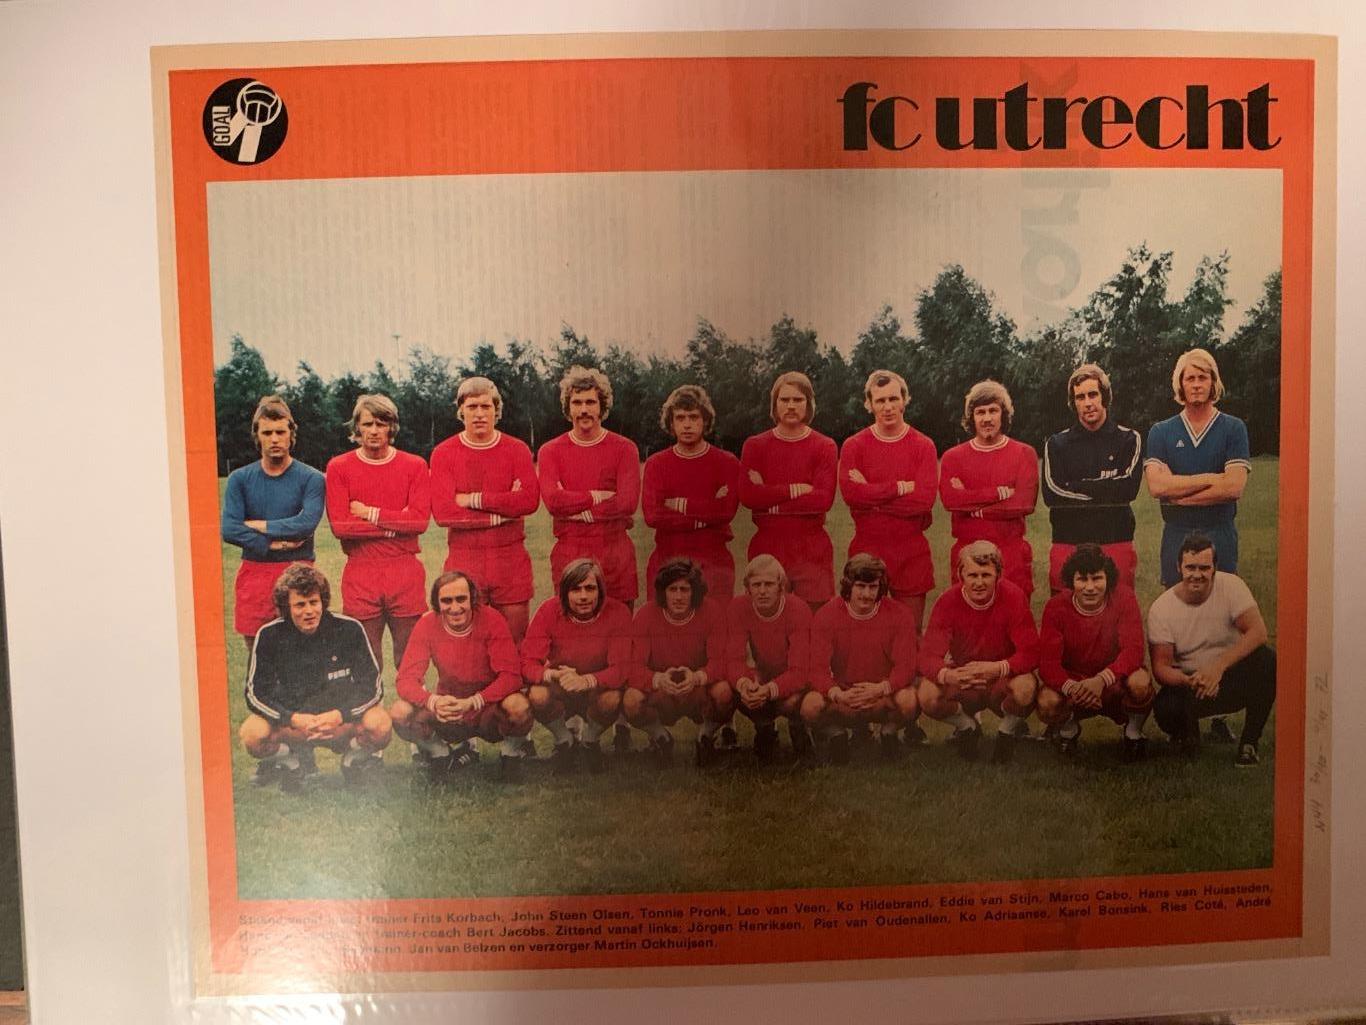 Чемпионат Голландии 1971/72-72/73-30 клубов 6